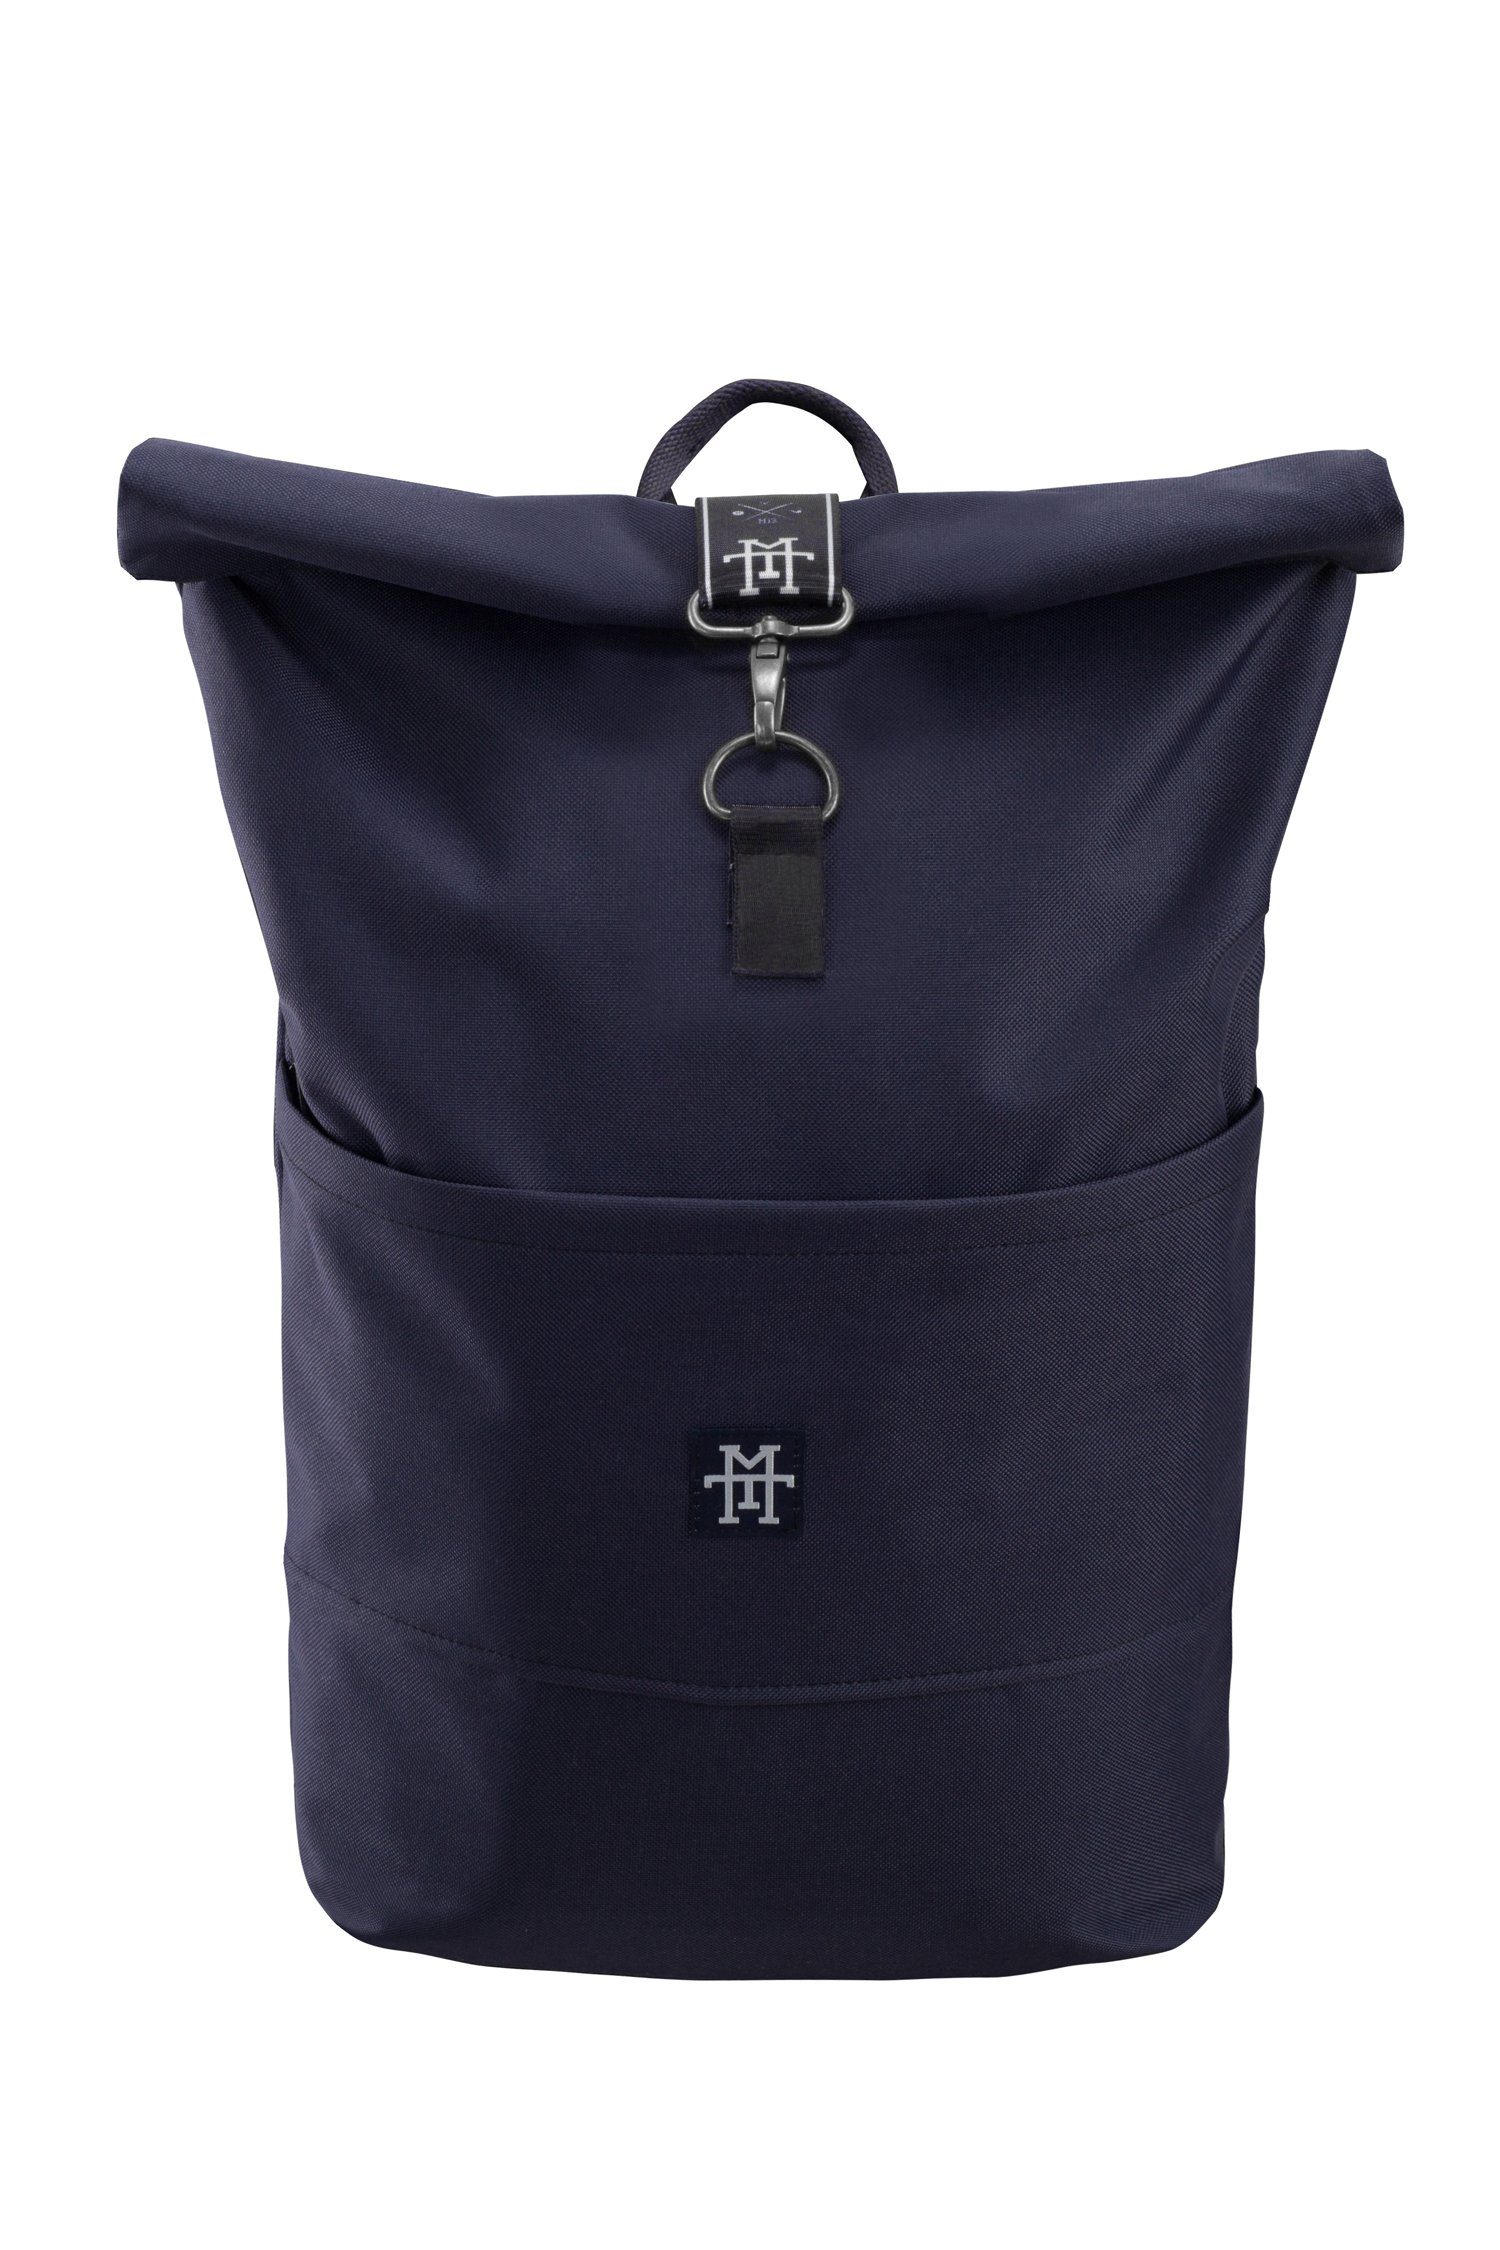 Manufaktur13 Edition Backpack verstellbare - Taped Rollverschluss, mit Roll-Top Navy Tagesrucksack Rucksack wasserdicht/wasserabweisend, Gurte